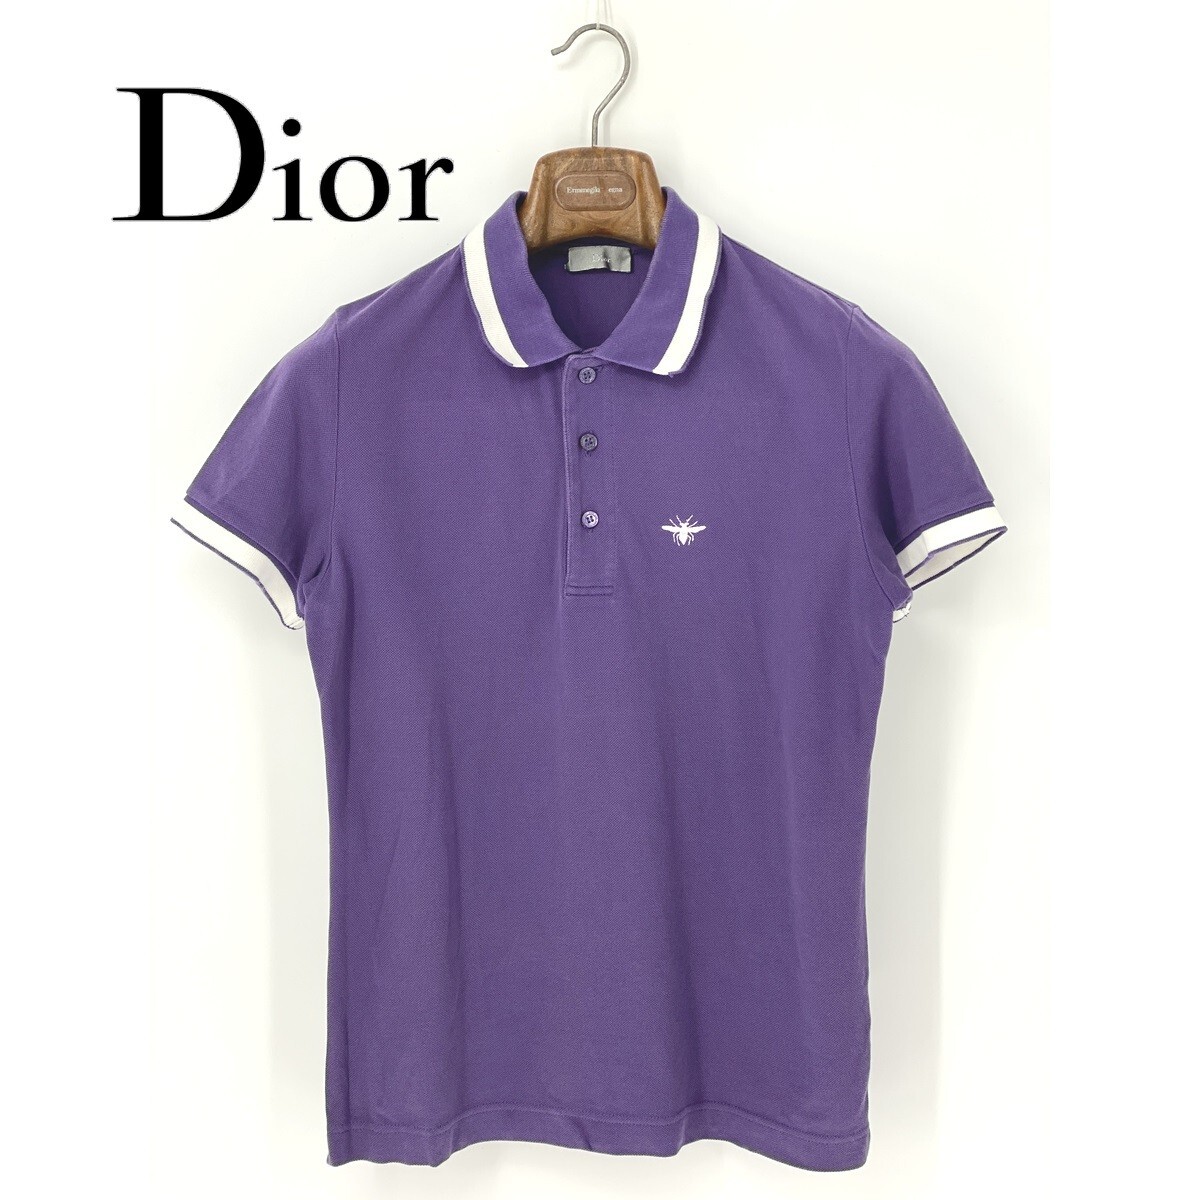 A8660/ прекрасный товар весна лето Dior HOMME Dior Homme Chris Van пепел период хлопок короткий рукав BEE Be вышивка футболка рубашка-поло 44 S степени фиолетовый мужской 